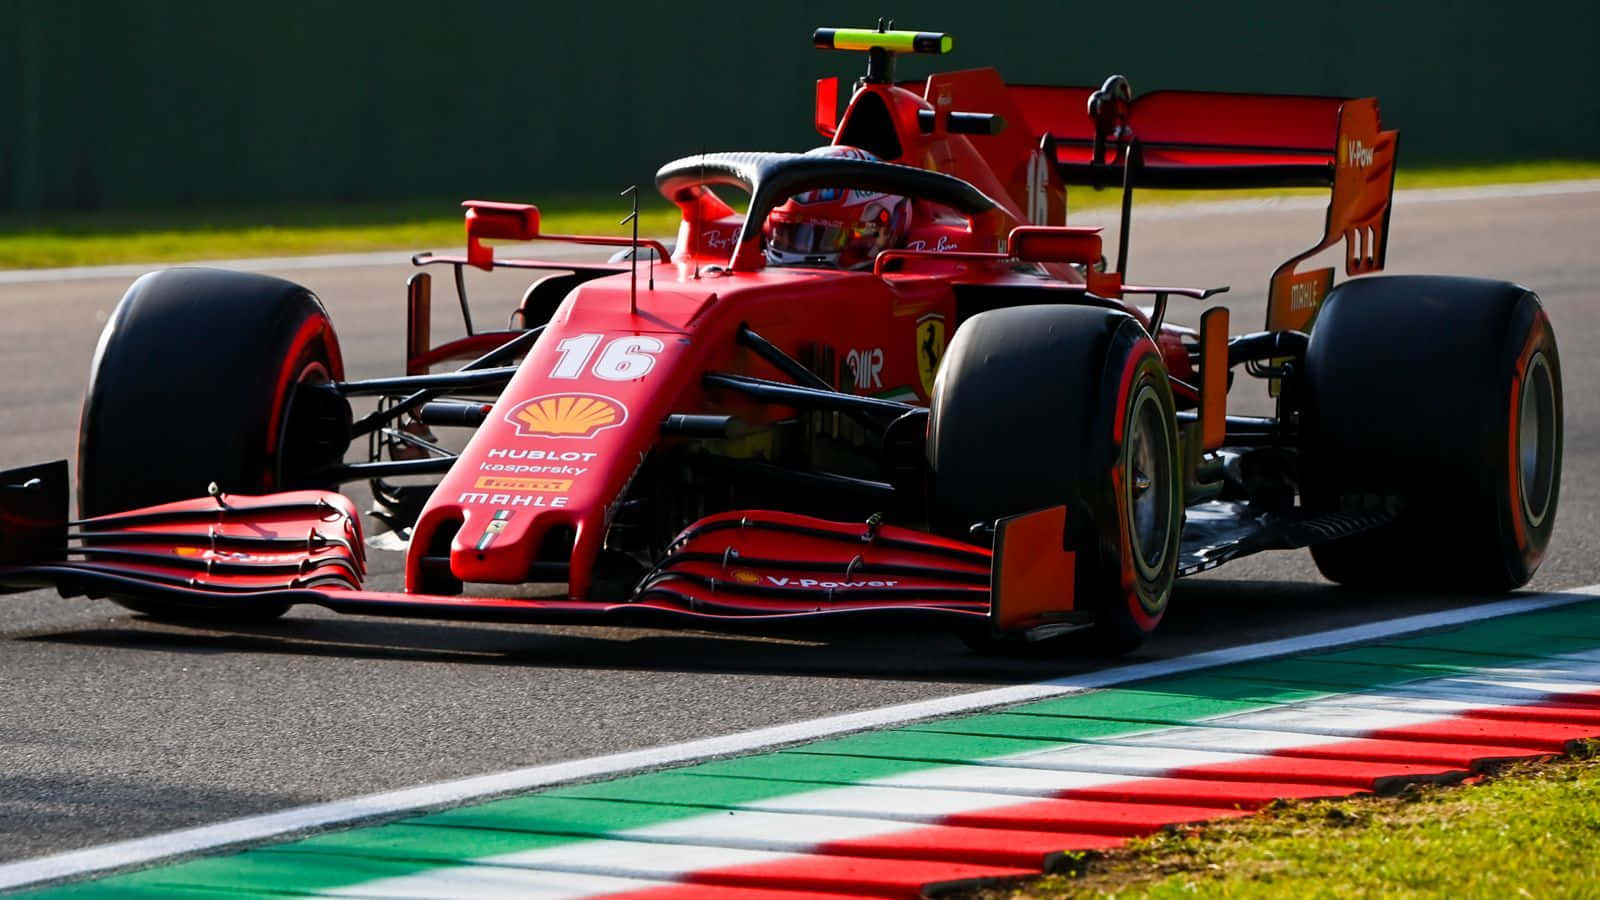 Ferrari F1 bil kører på en bane Wallpaper